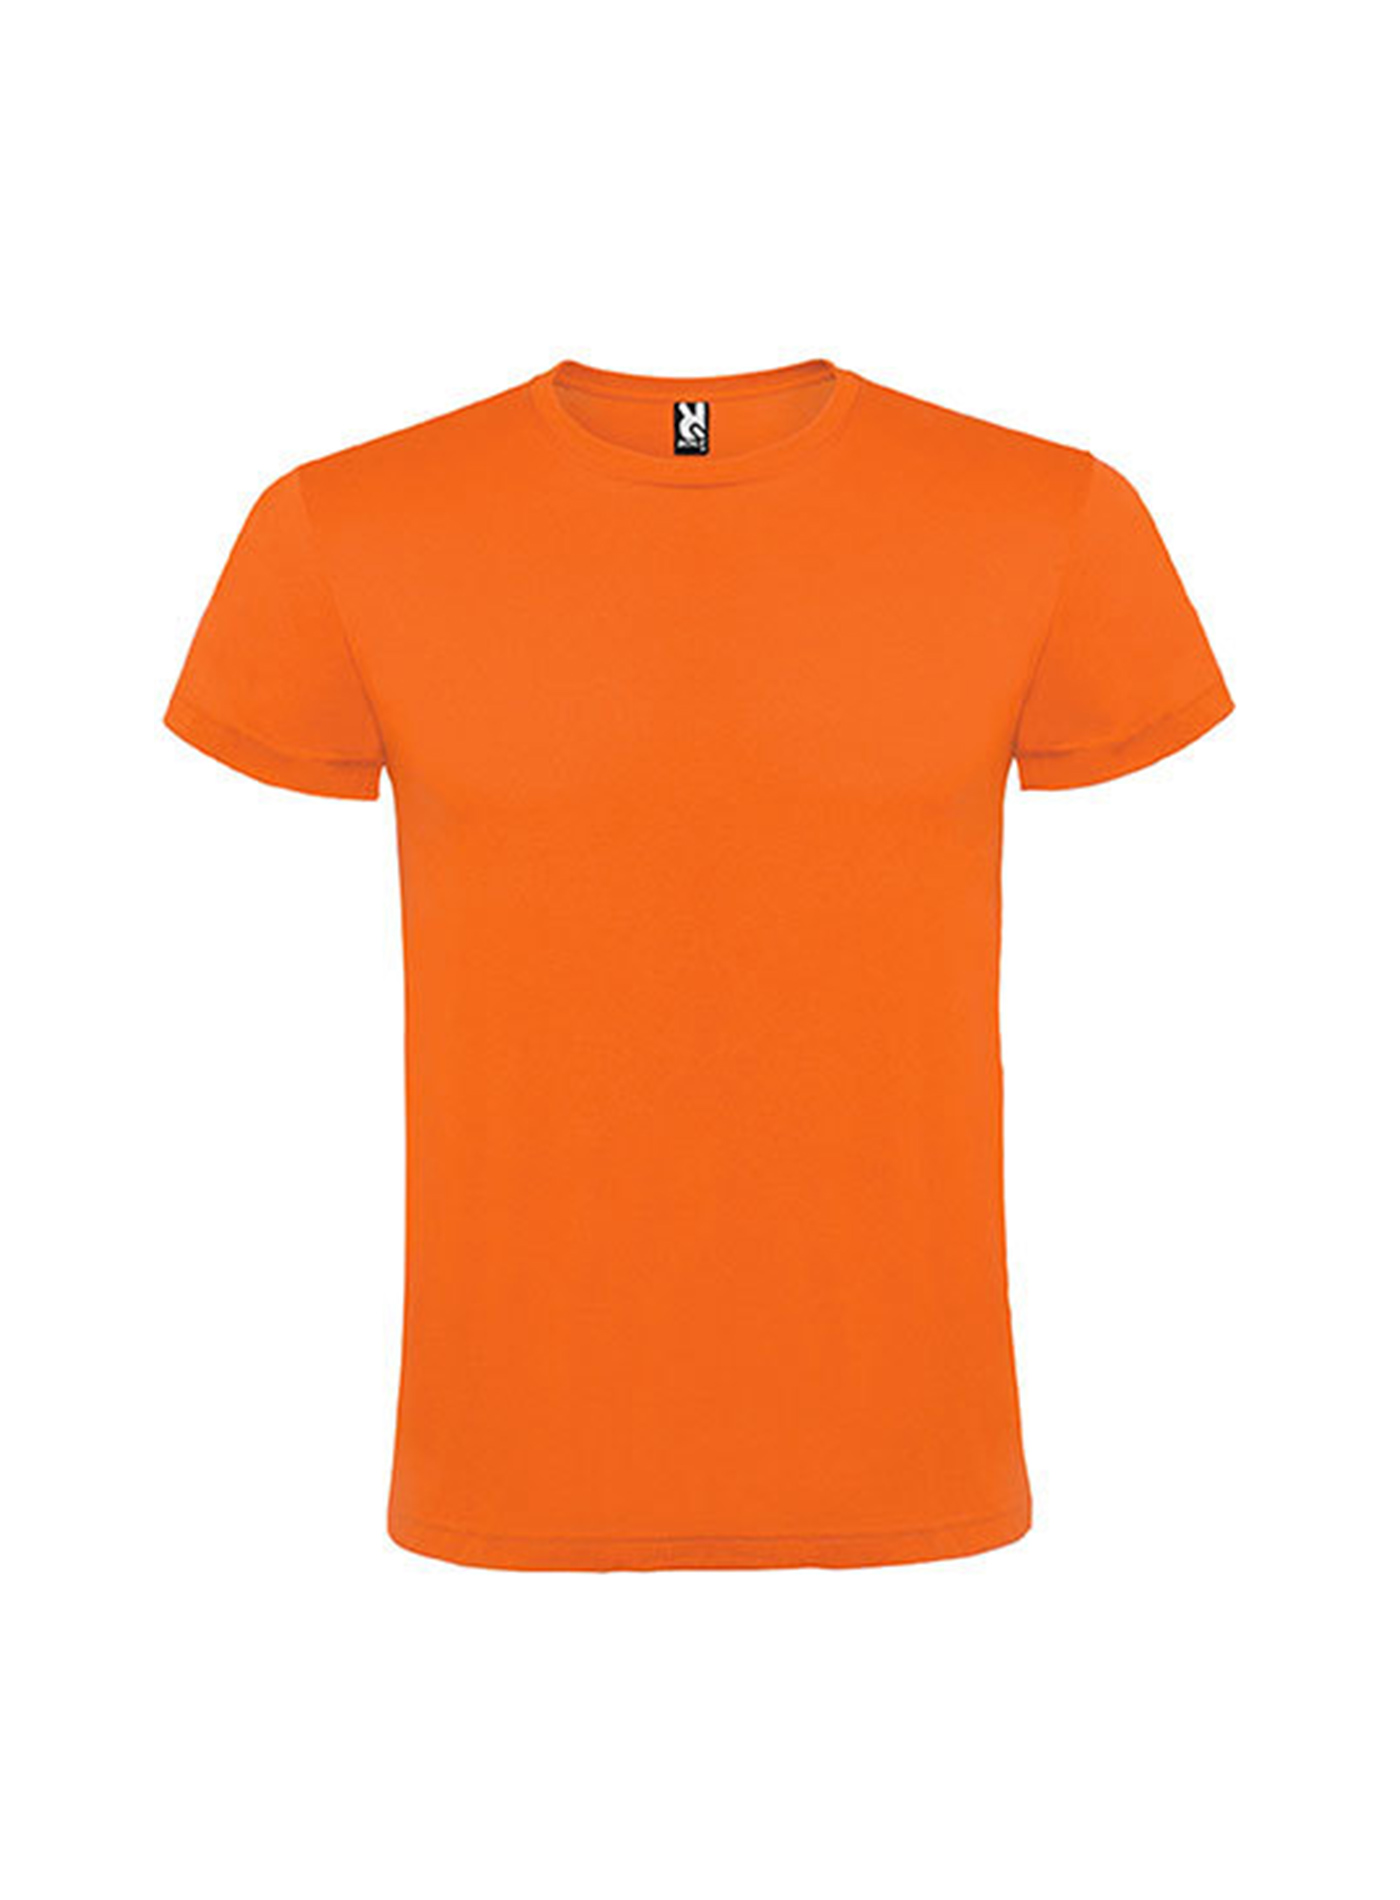 Pánské tričko Roly Atomic - Oranžová L